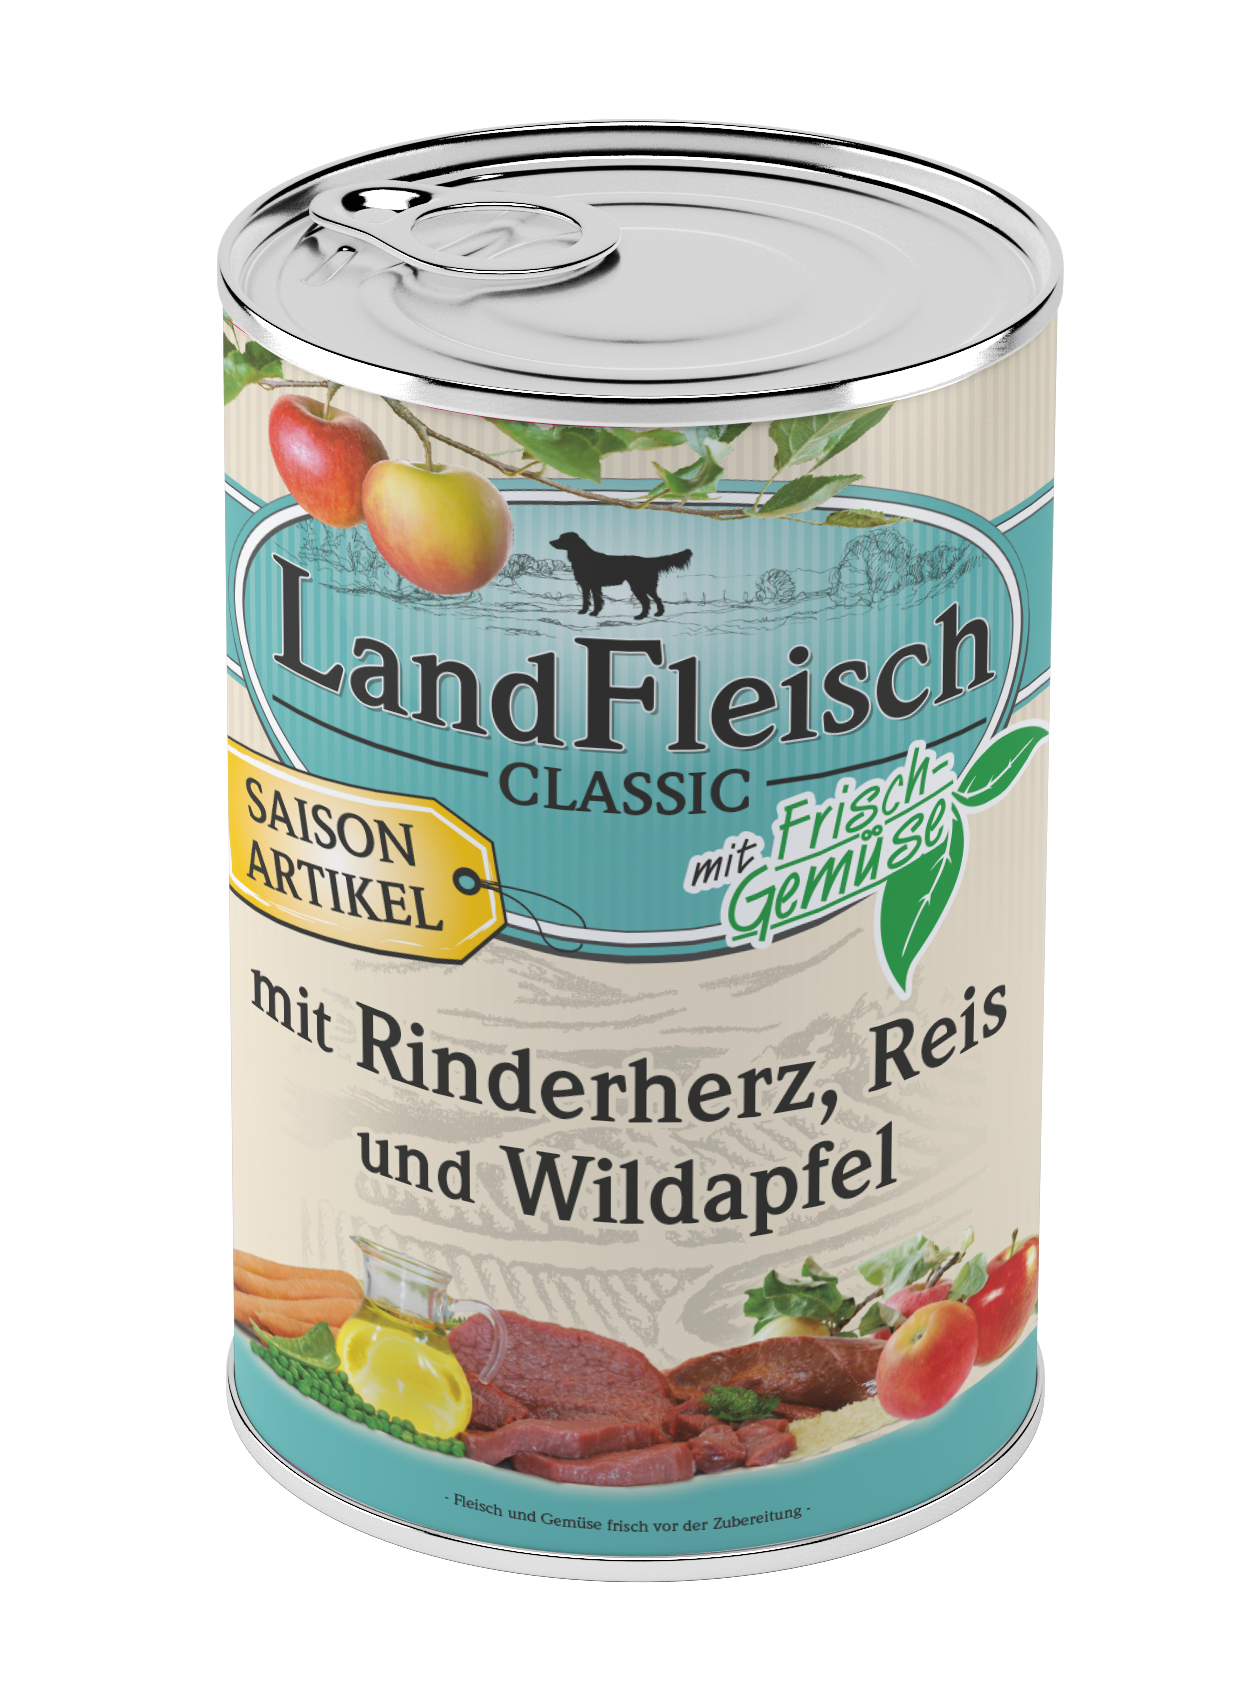 LandFleisch Classic Rinderherz, Reis & Wildapfel mit Frischgemüse 400g